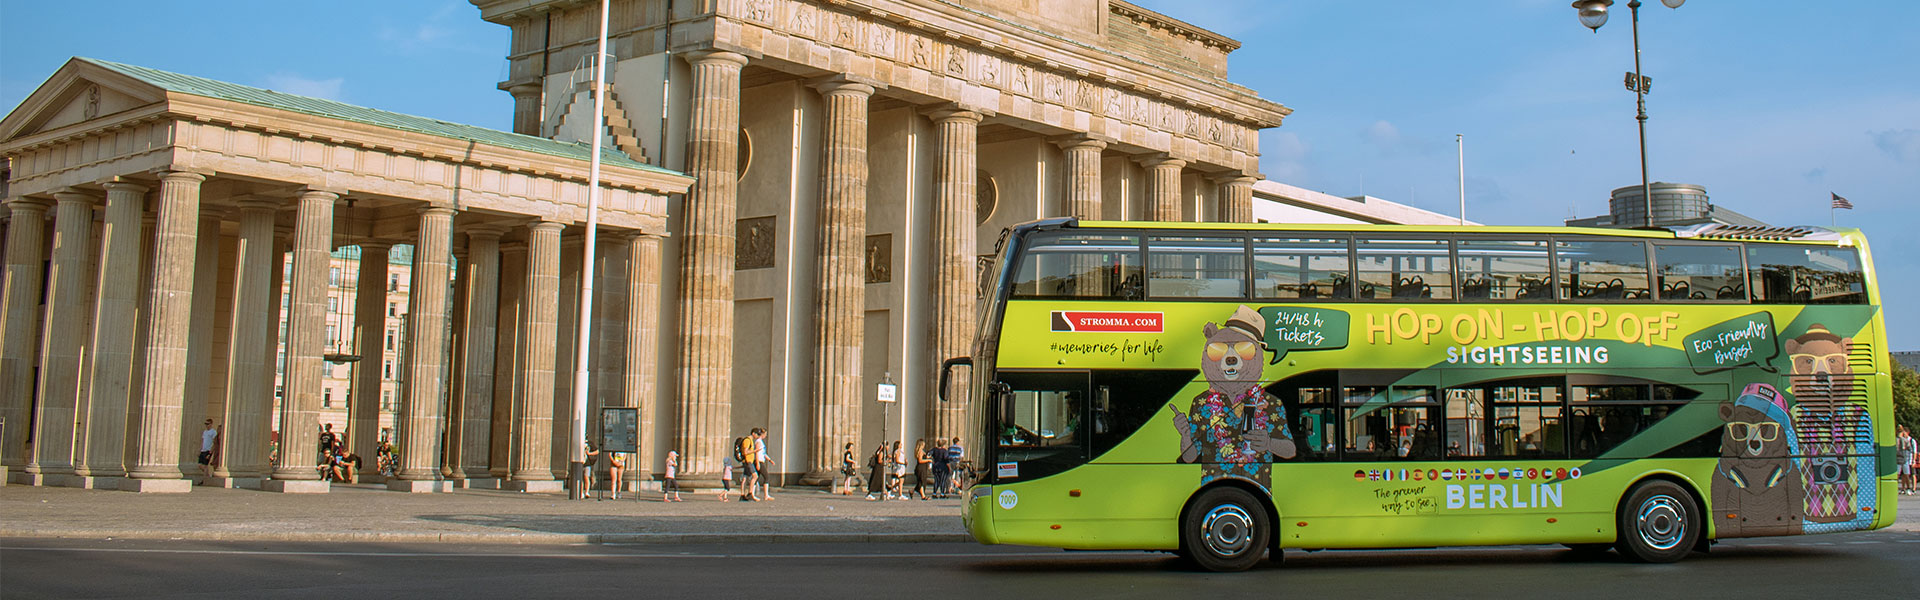 Stromma Bus in front of the Brandenburg Gate